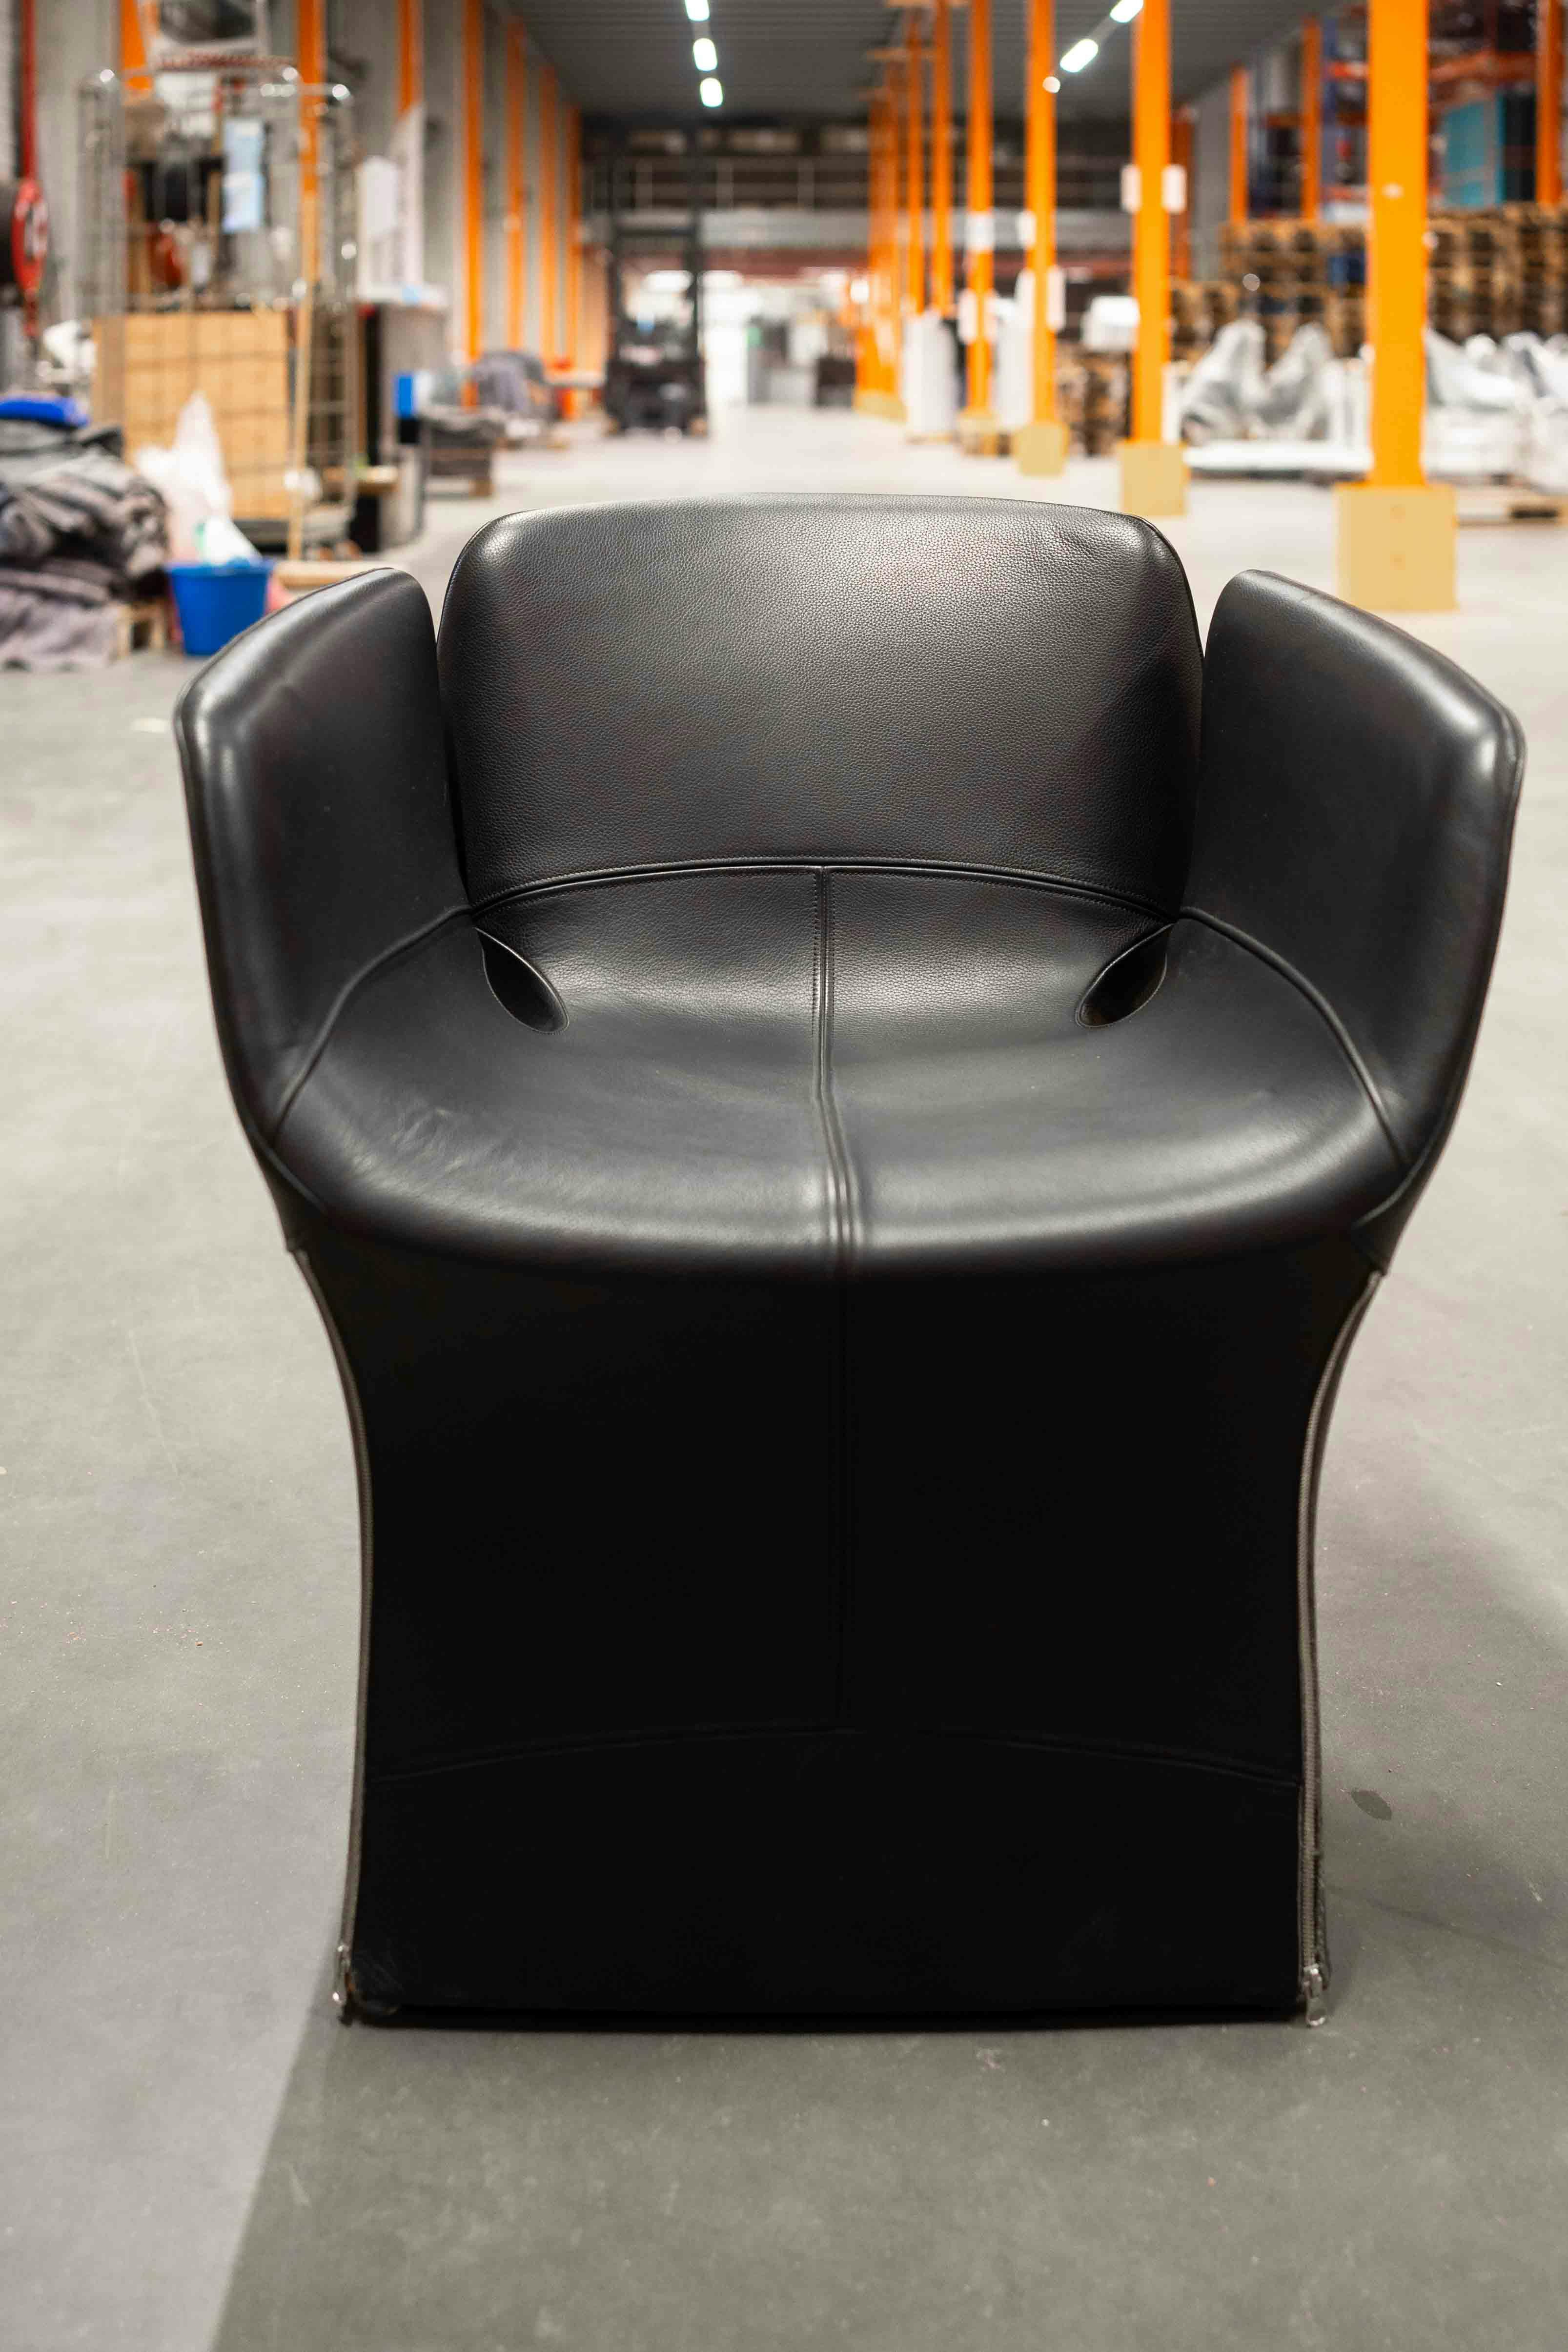 BEFI2219:Comfortabele stoelen - Relieve Furniture